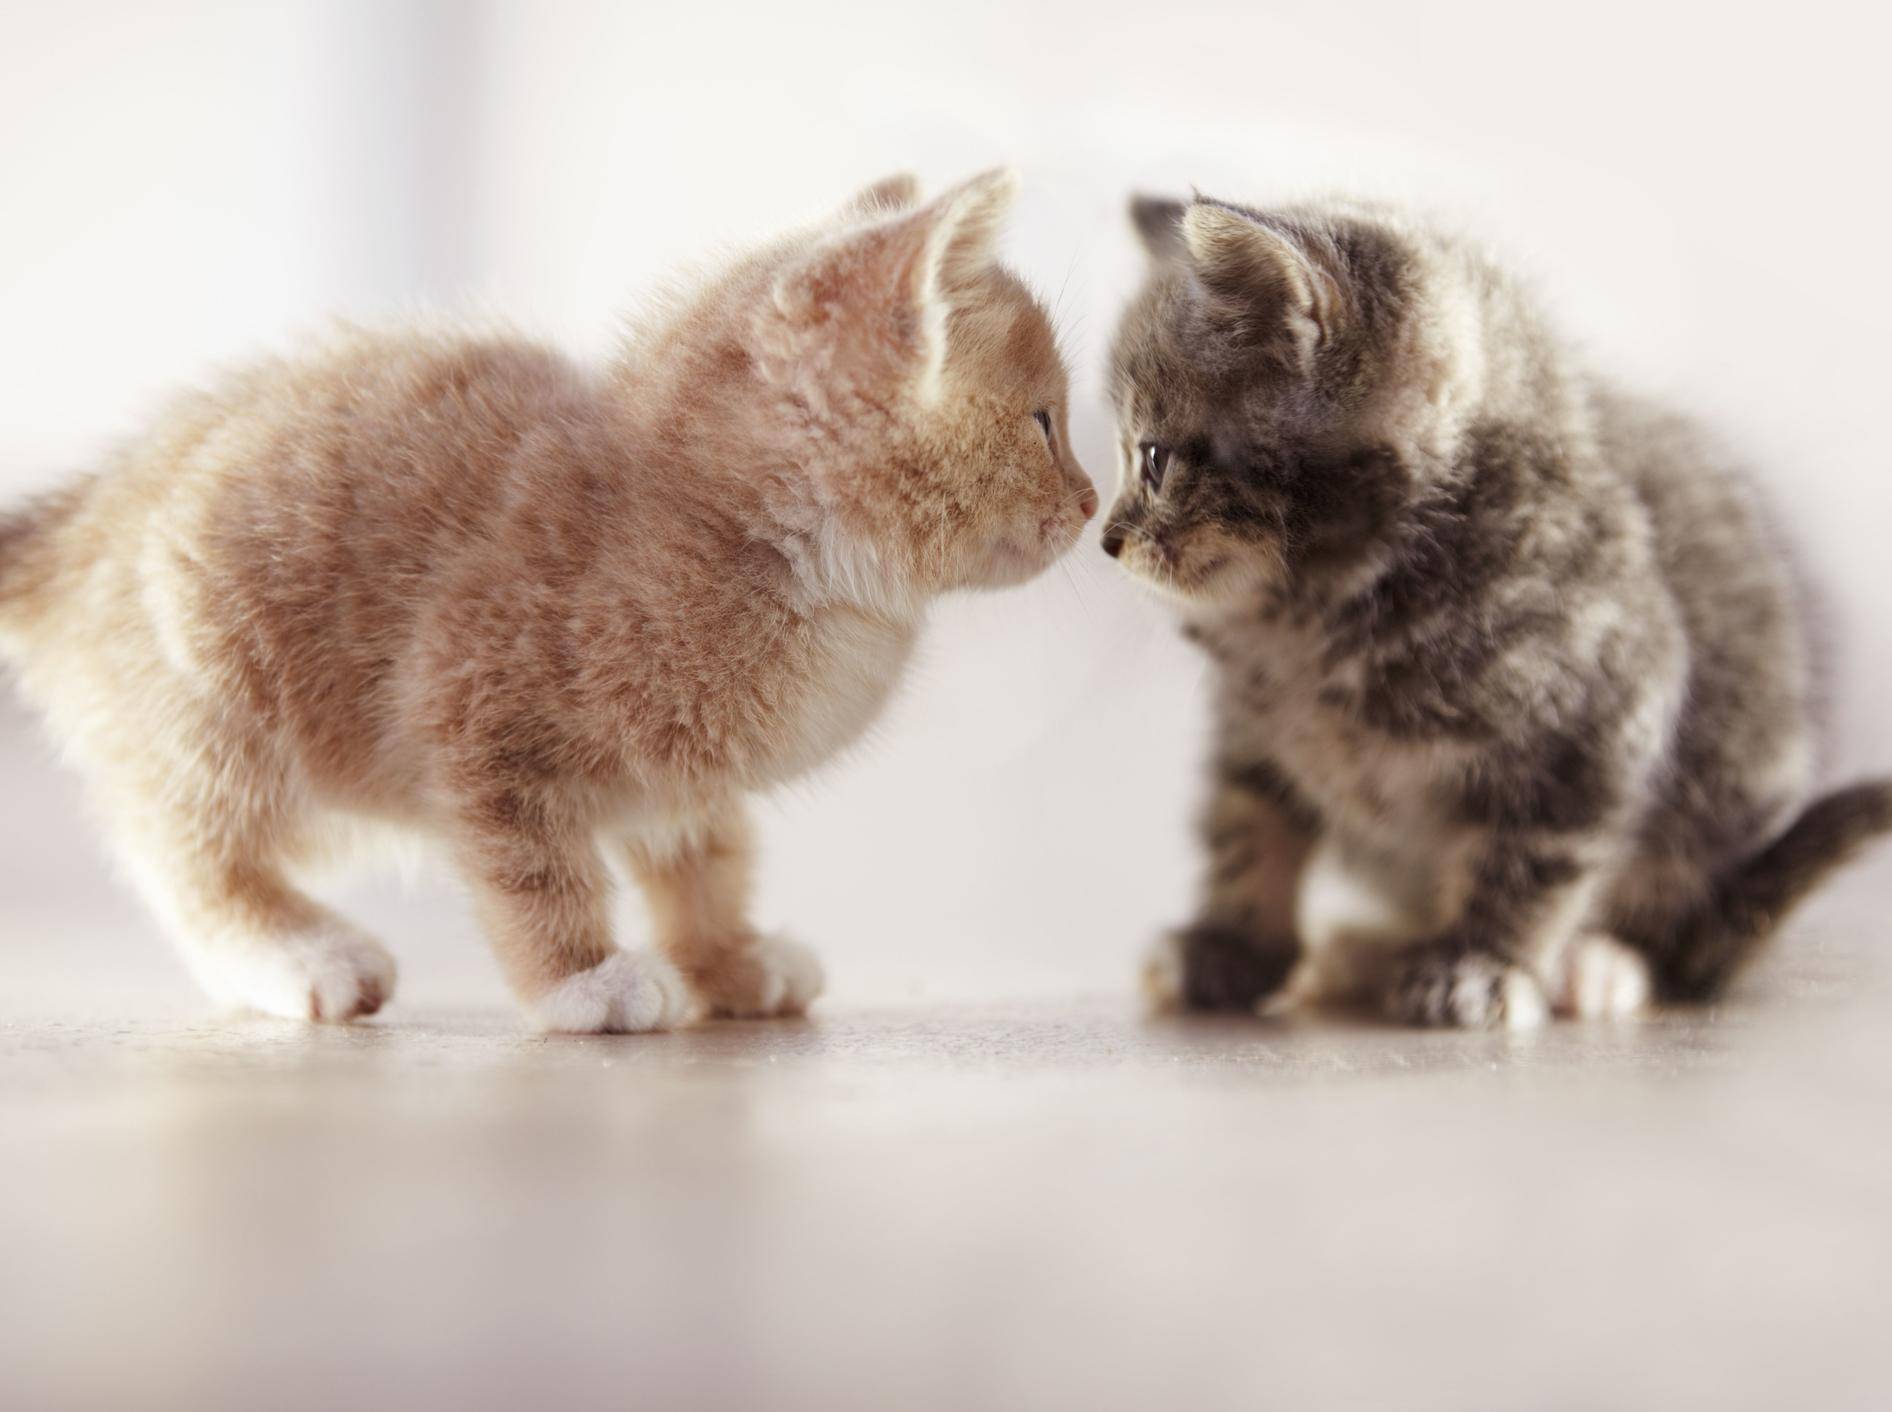 "Huch, du siehst ja heute anders aus!" Katzenbabys beim Spielen — Bild: Shutterstock / Yuri Arcurs